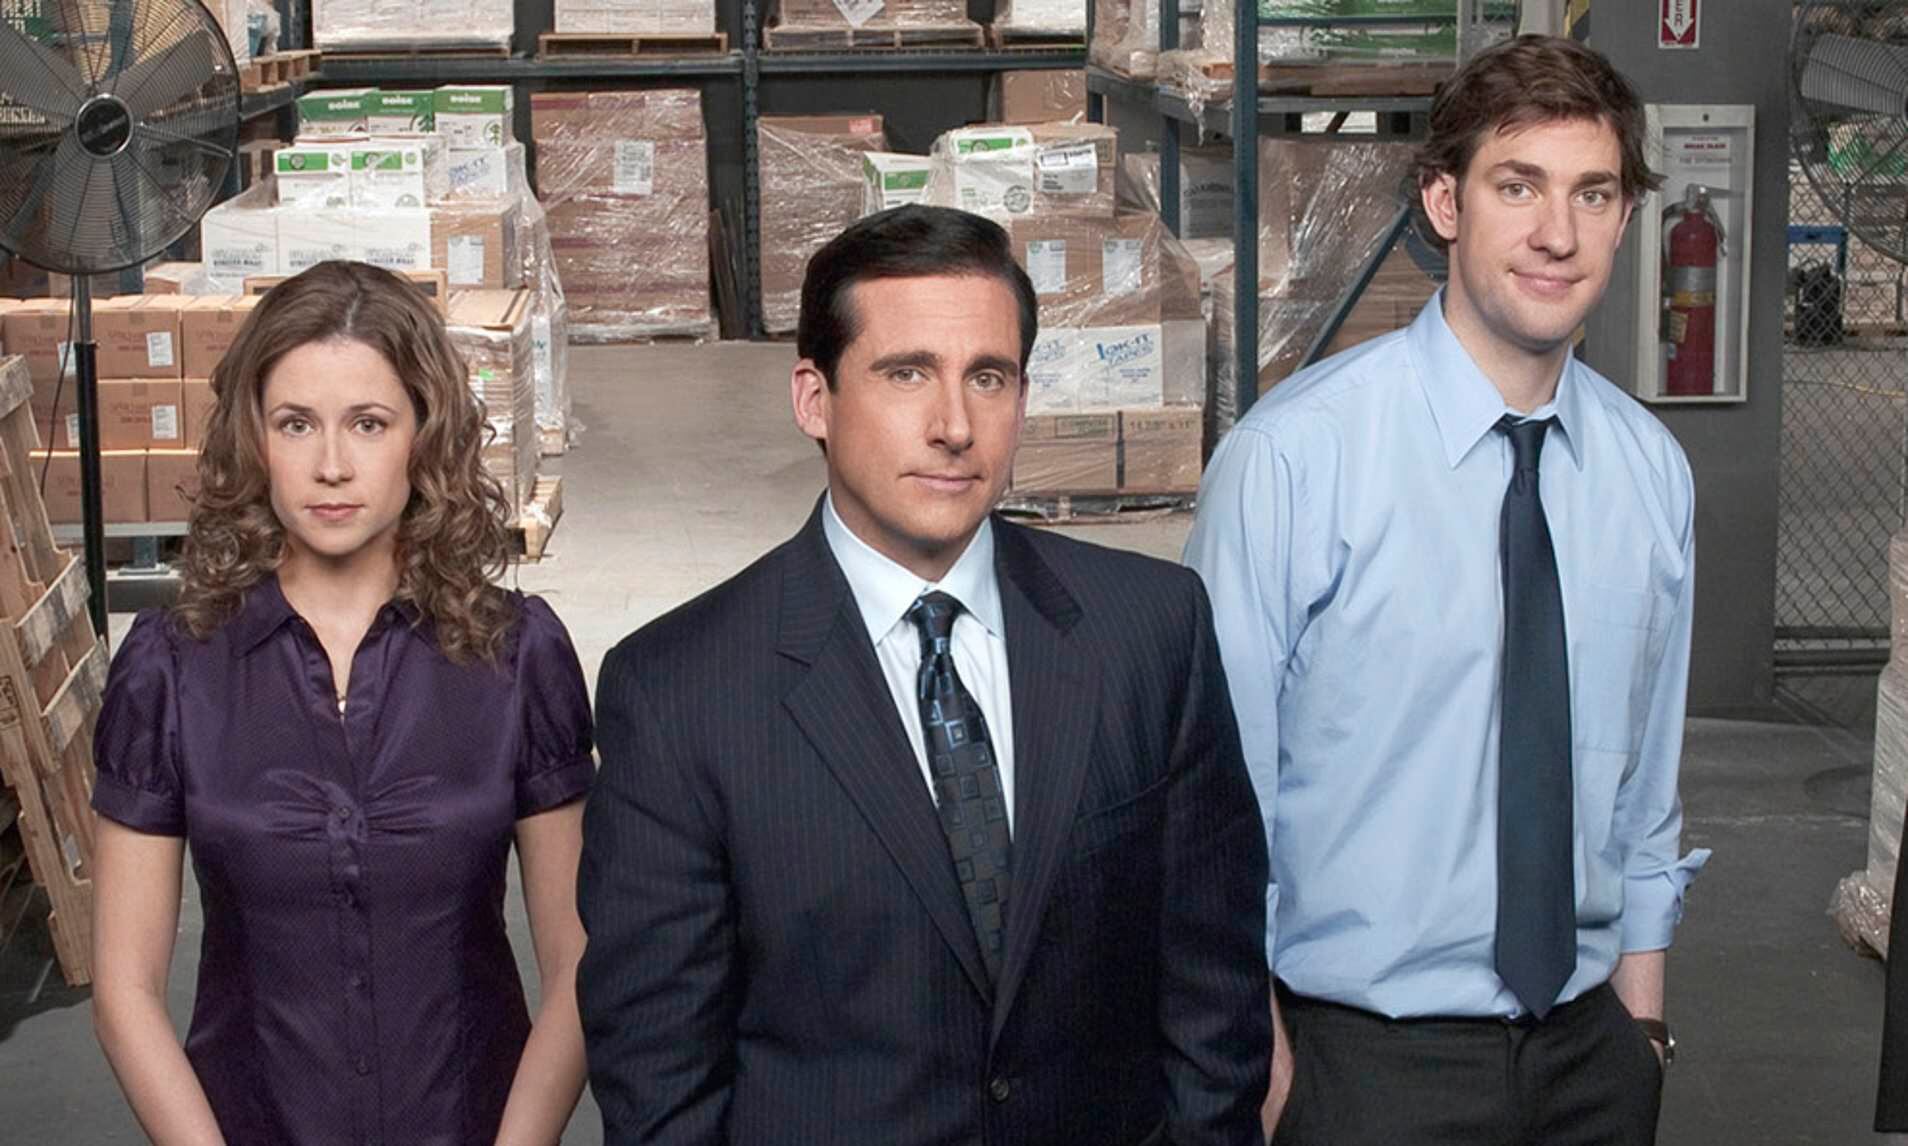 La versión estadounidense de 'The Office' tuvo un nuevo auge con la llegada de las plataformas de streaming. Foto: NBC